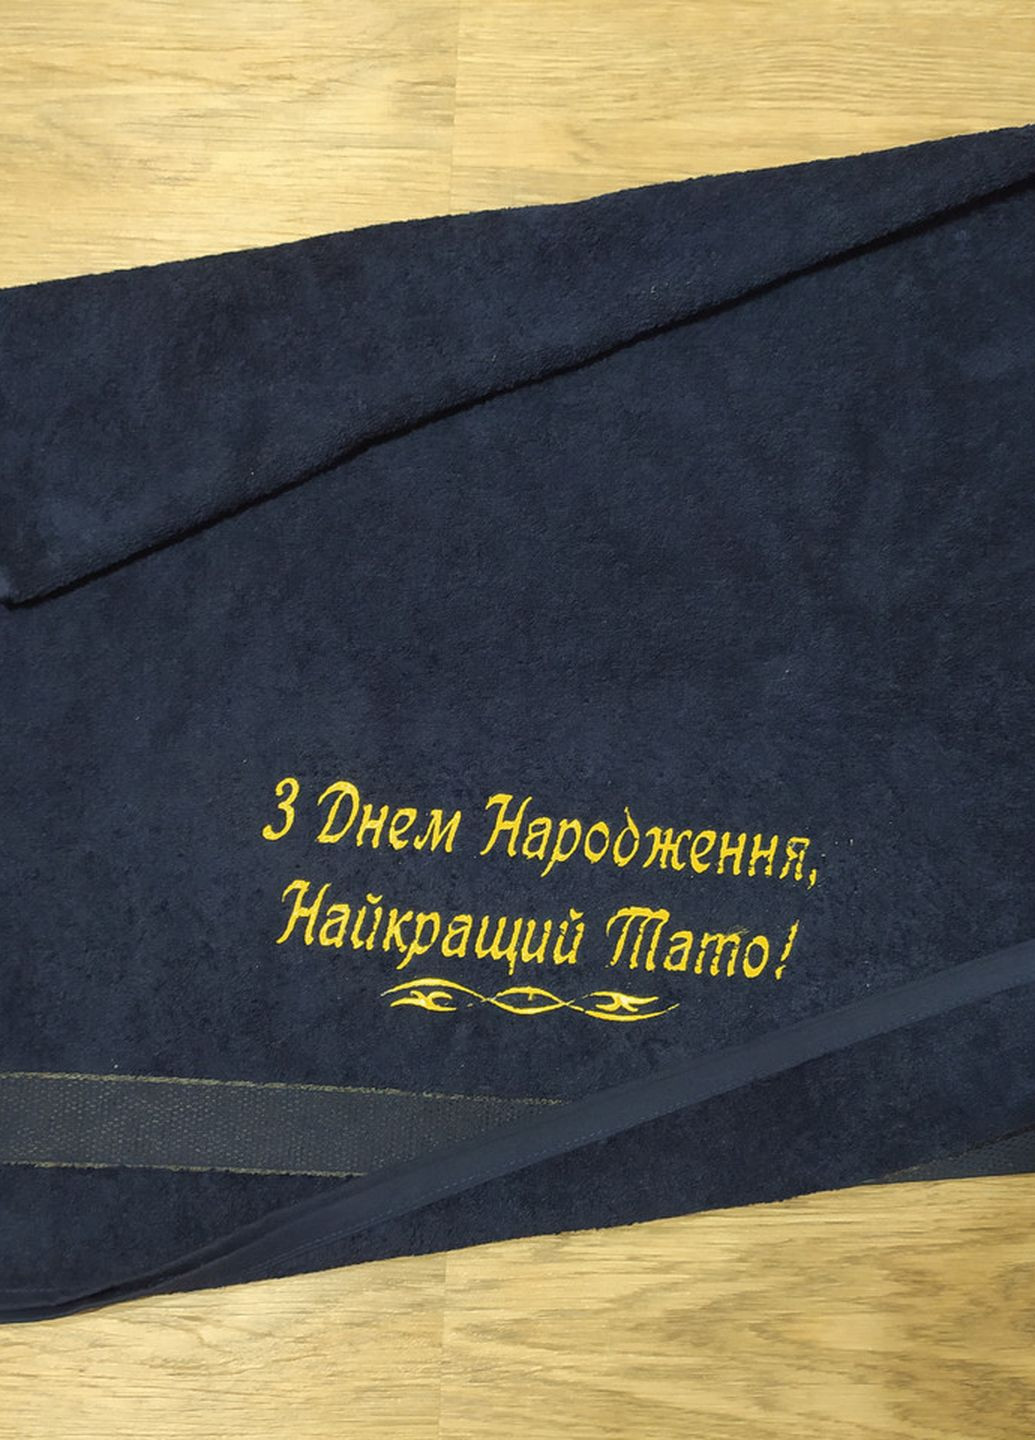 No Brand полотенце с вышивкой махровое банное 70*140 темно-синий папе 00318 однотонный темно-синий производство - Украина